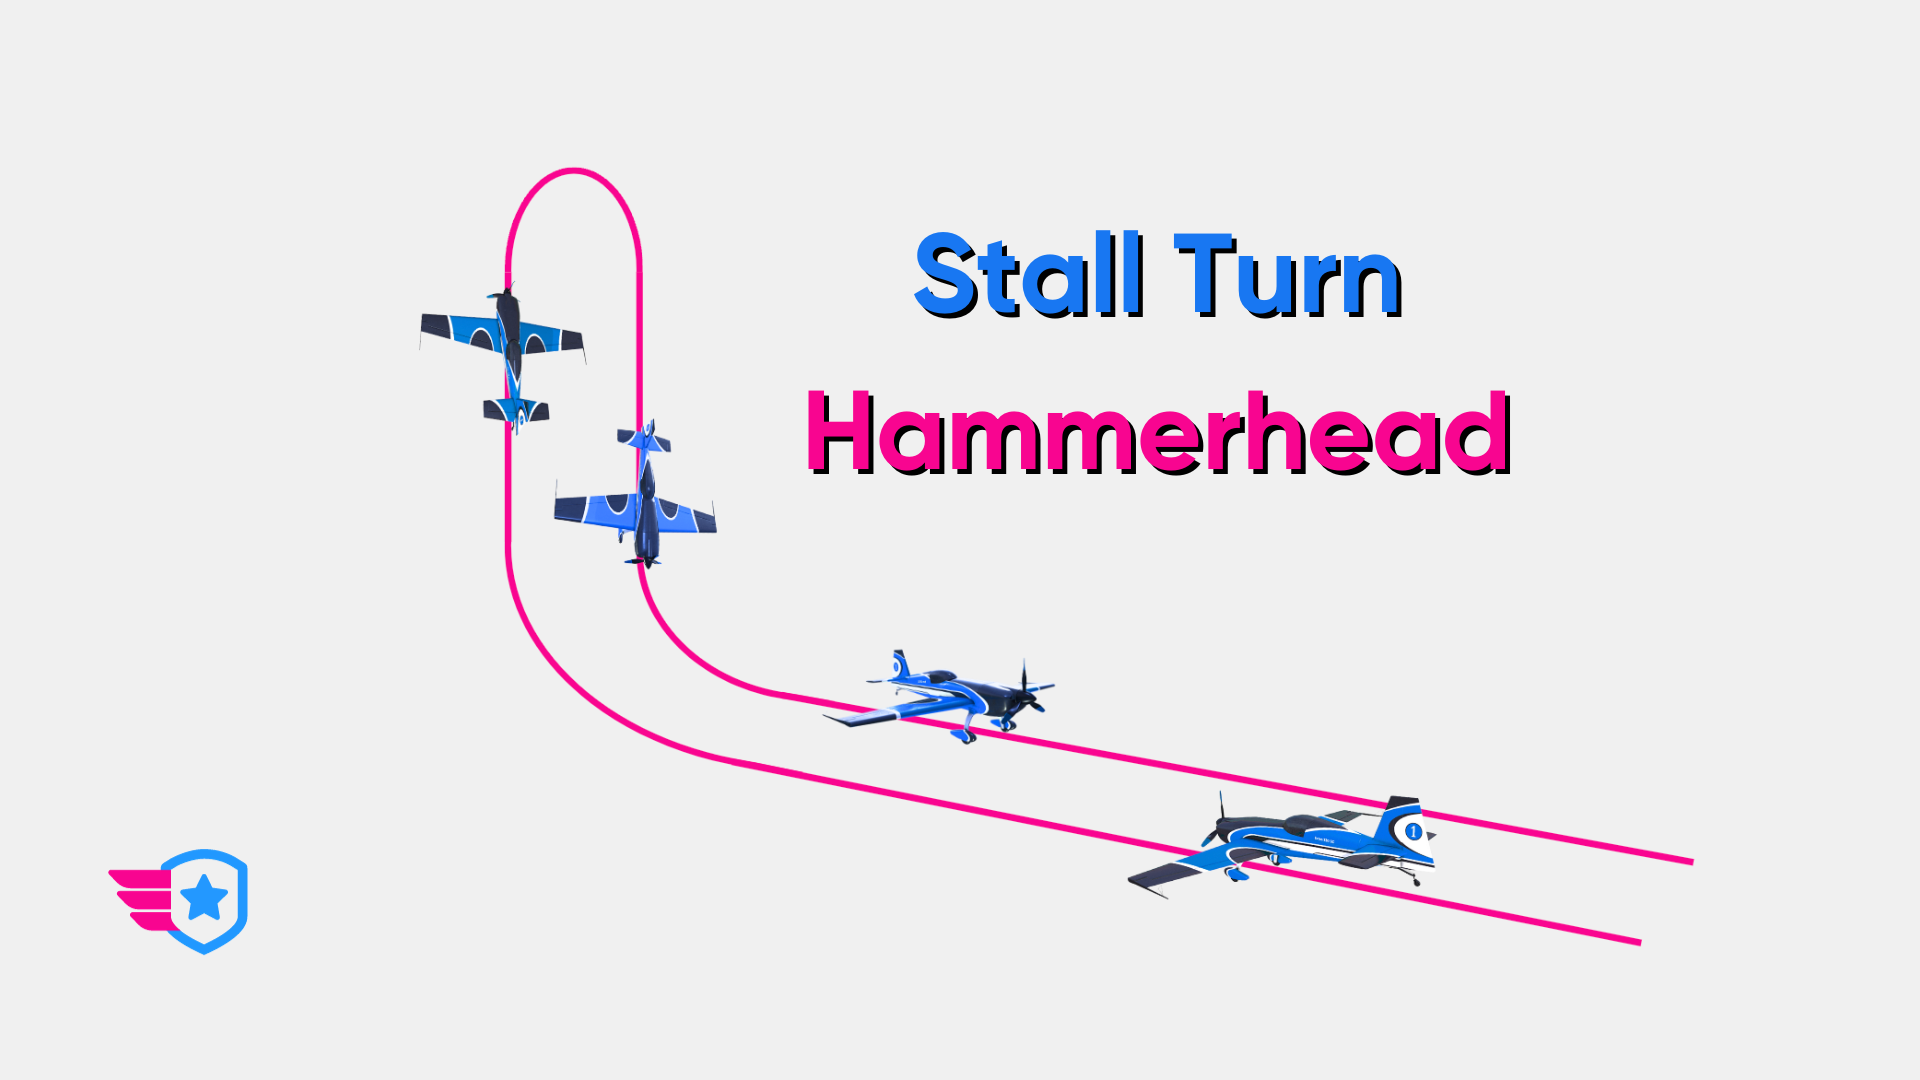 Stall Turn (Hammerhead) Explained